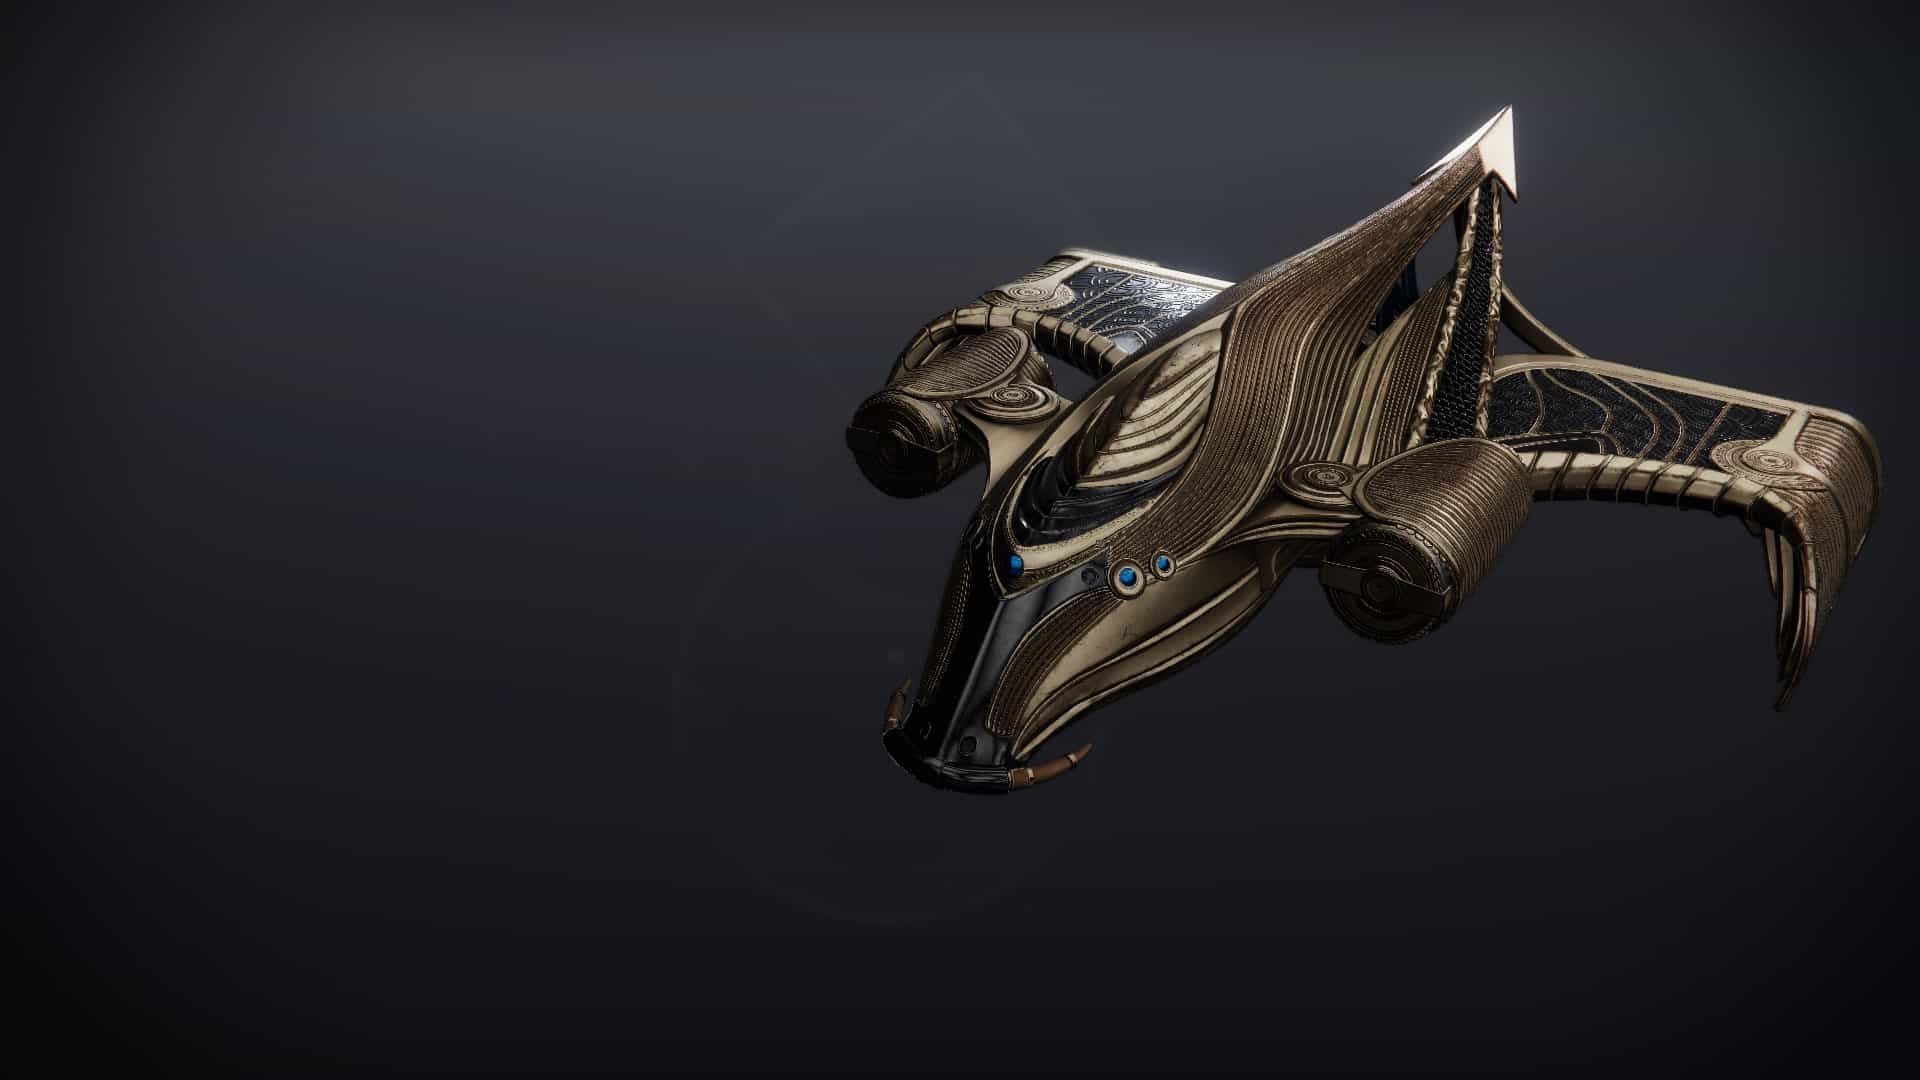 Sovereign Order ship Destiny 2